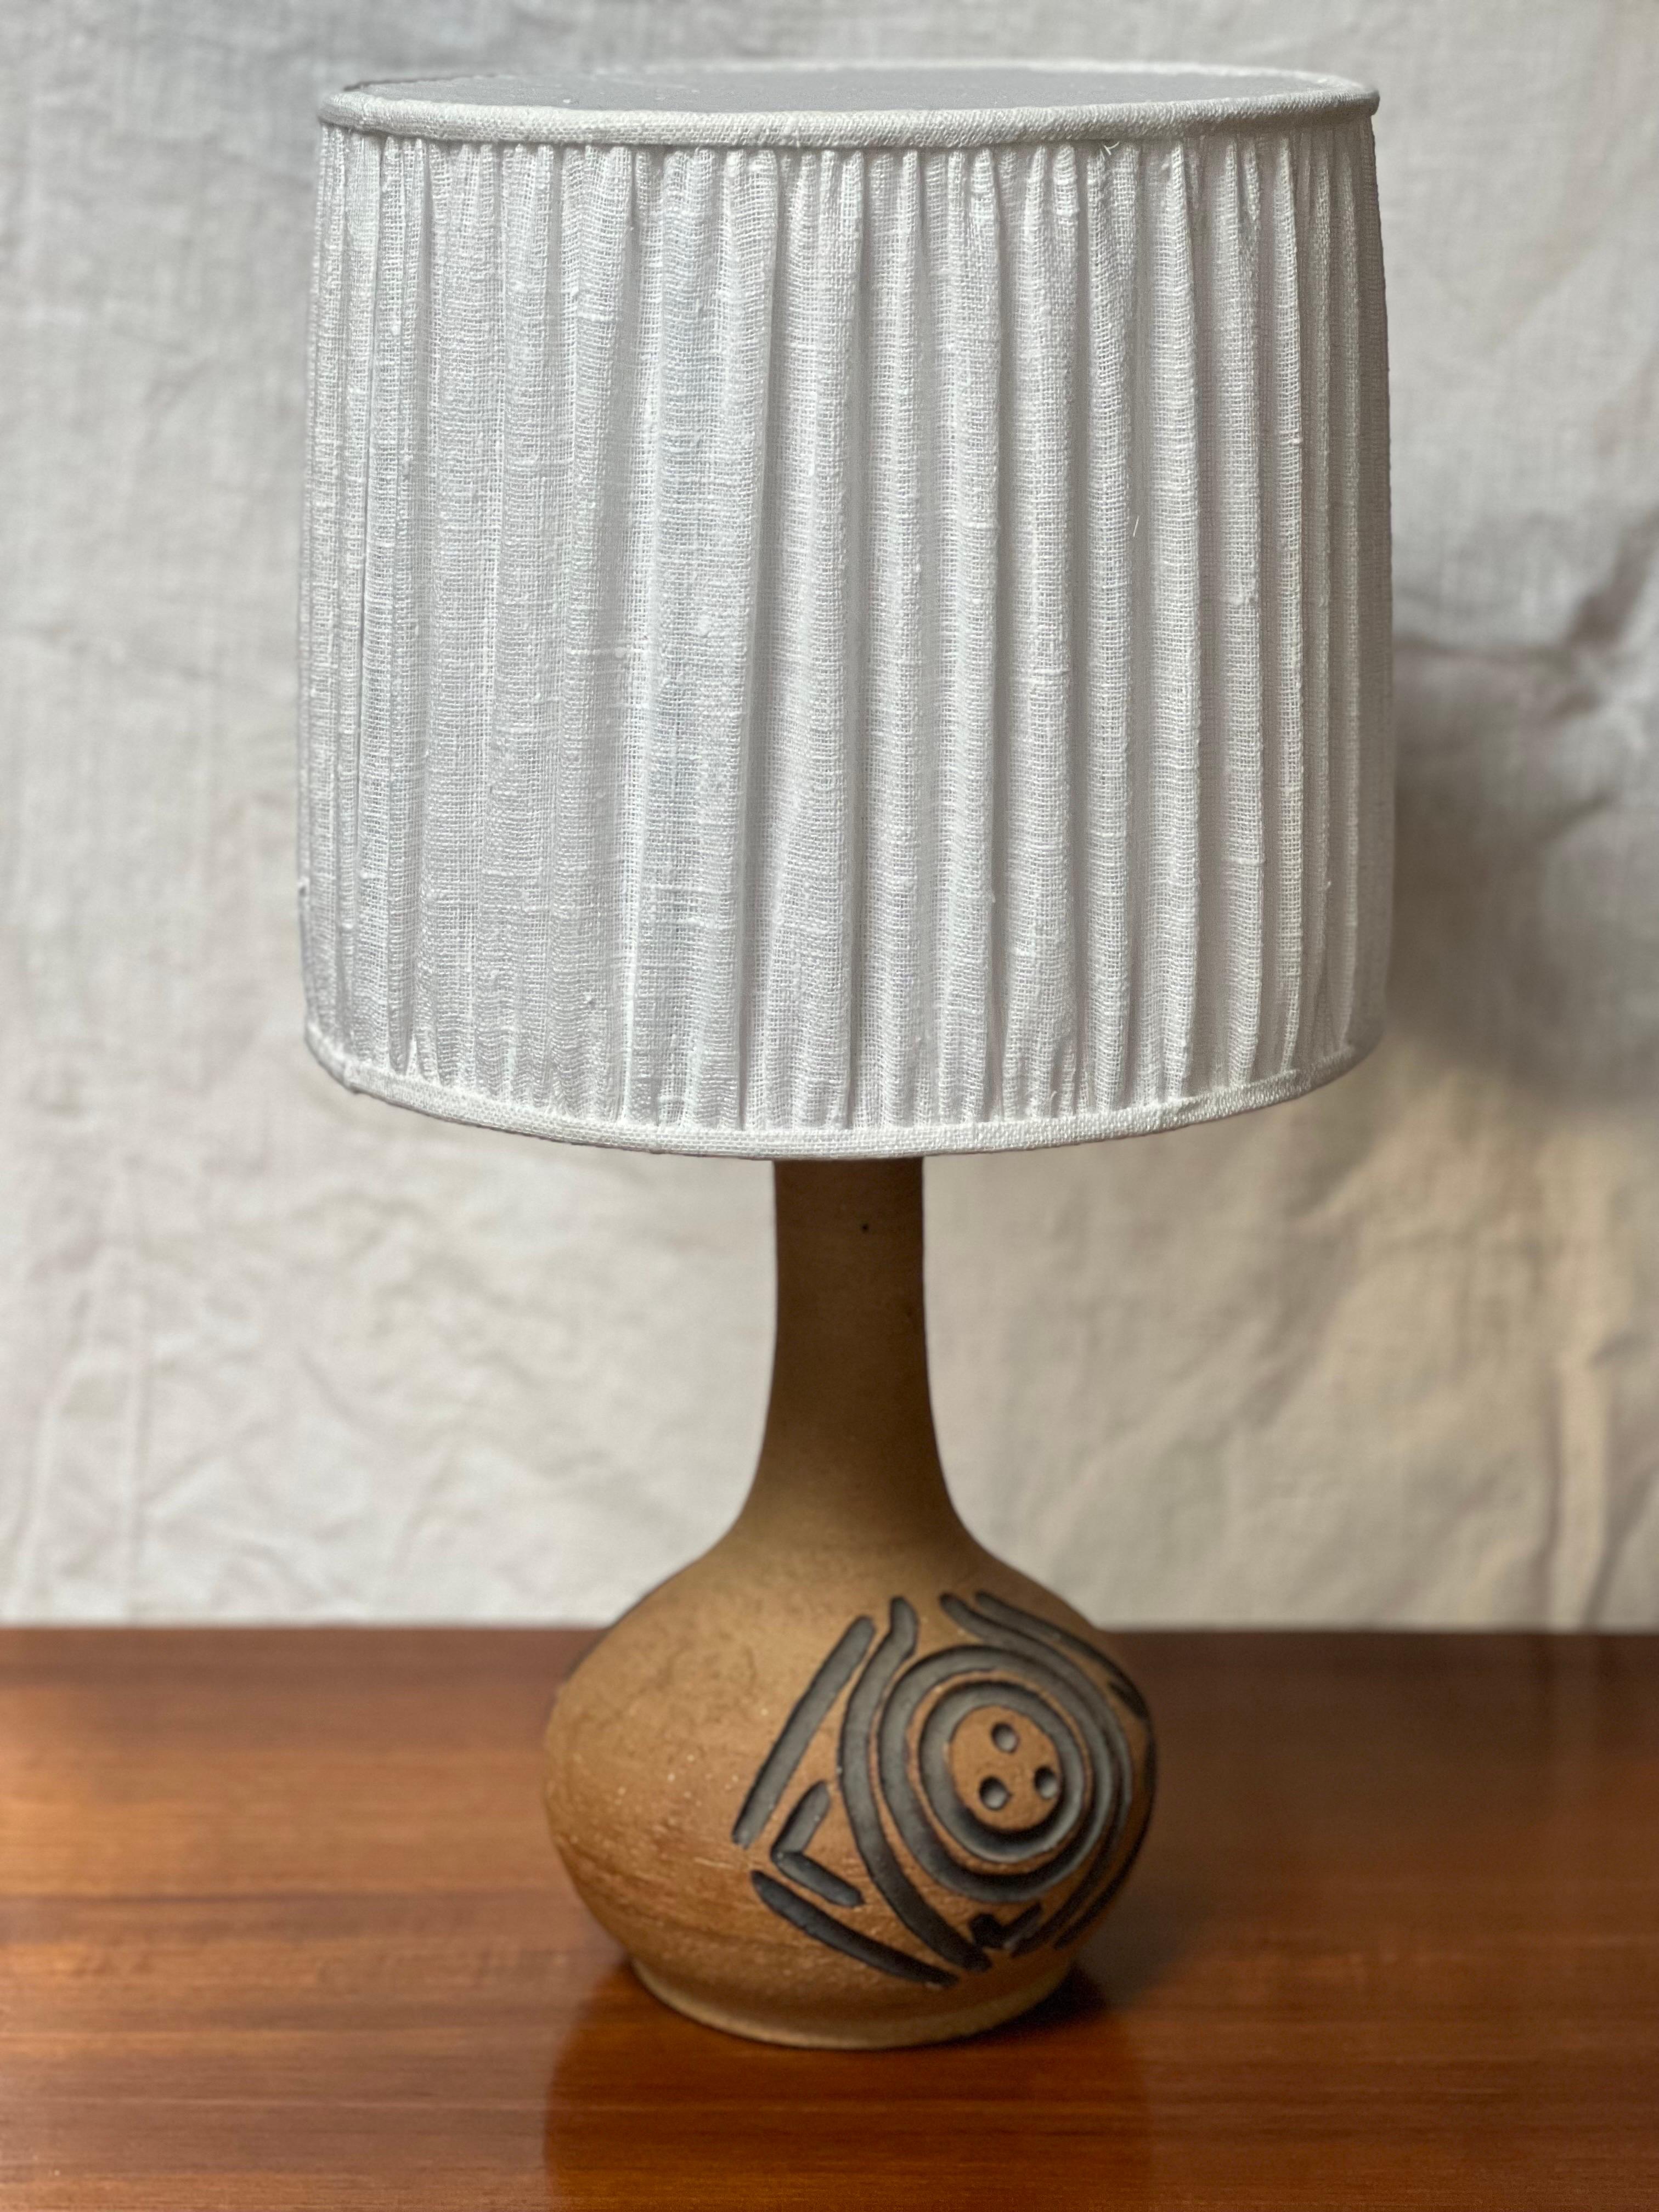 Die Lampe wurde in den 1970er Jahren im Axella Studio Design hergestellt, einer Keramikmanufaktur. Erdtöne mit stark geschwärztem Muster. Die Gesamthöhe dieser Lampe einschließlich des Schirms beträgt 57 cm. Der Schirm ist 27 cm hoch und hat einen